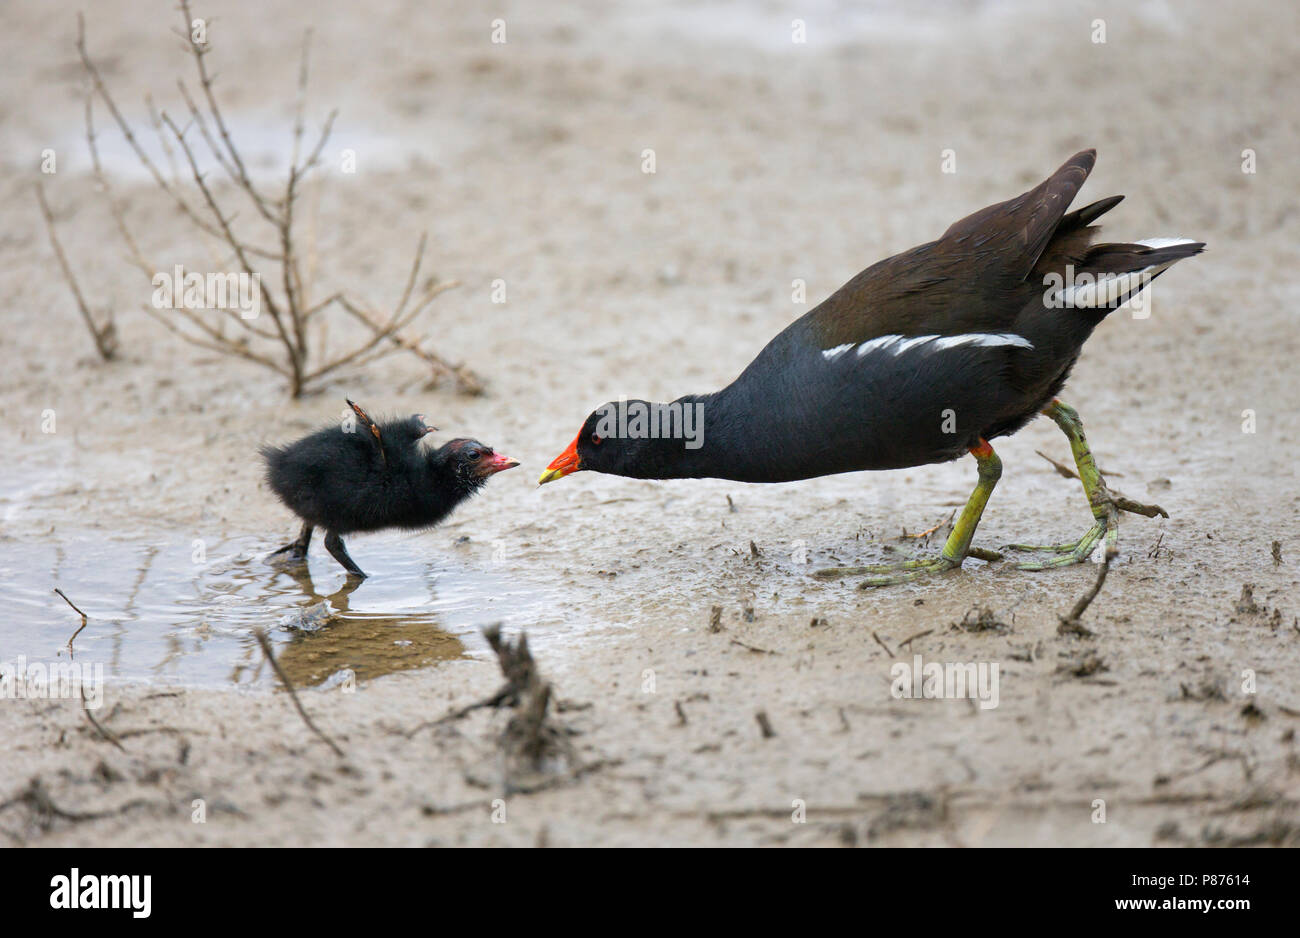 Waterhoen ouder voert kuiken, nestjong op modderige slikbodem; Common Moorhen parent feeds chick on wet muddy ground Stock Photo